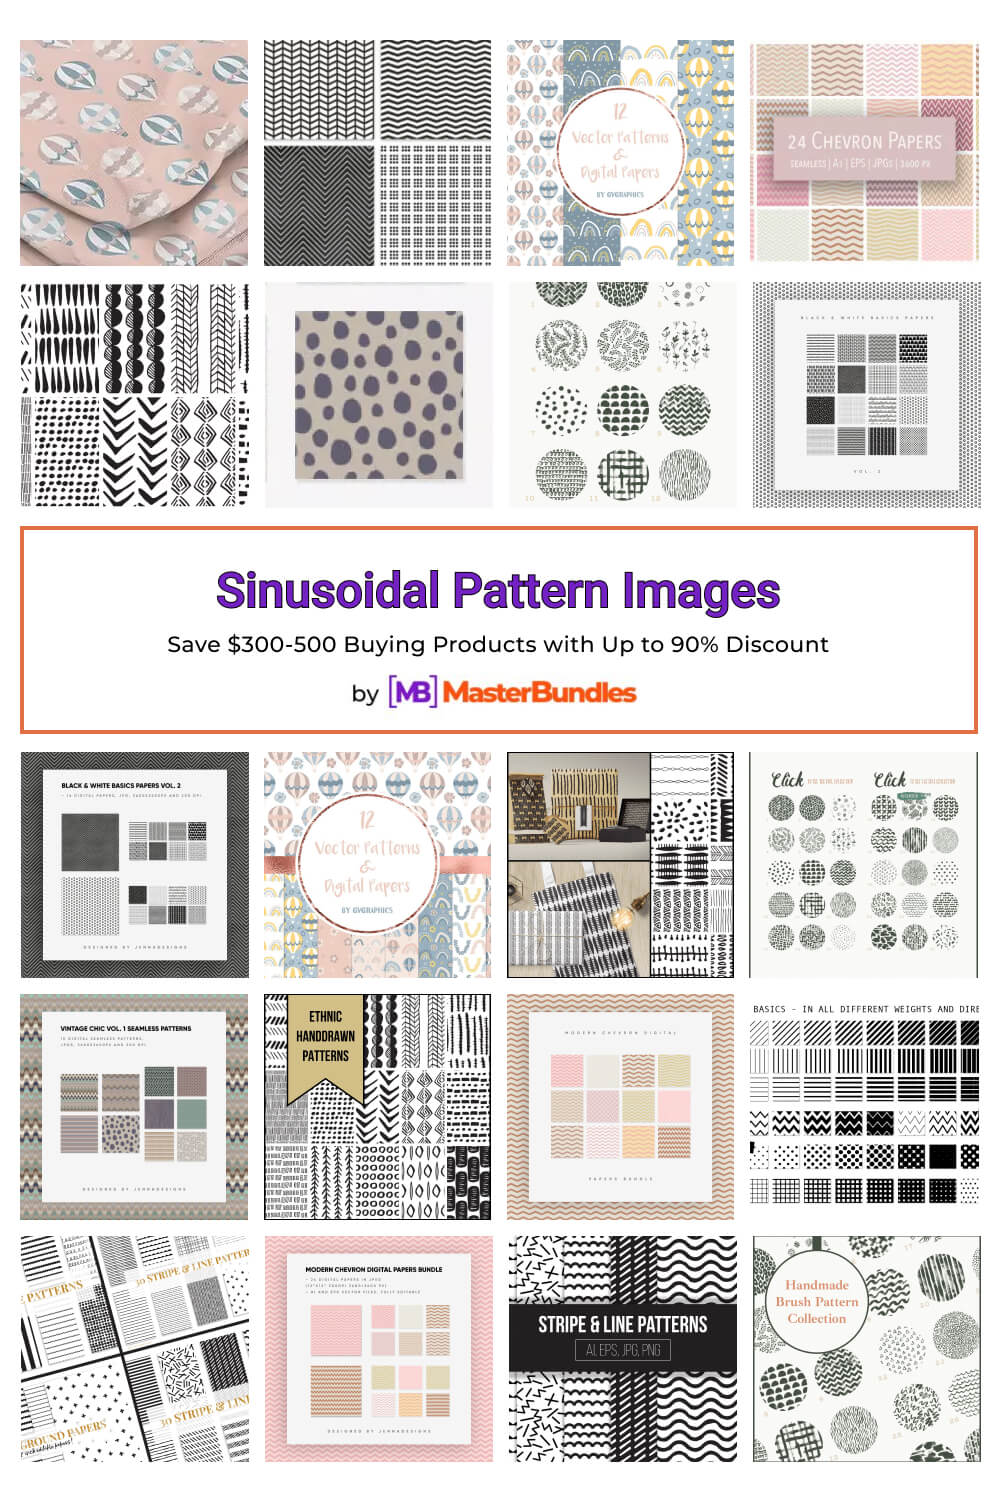 sinusoidal pattern images pinterest image.